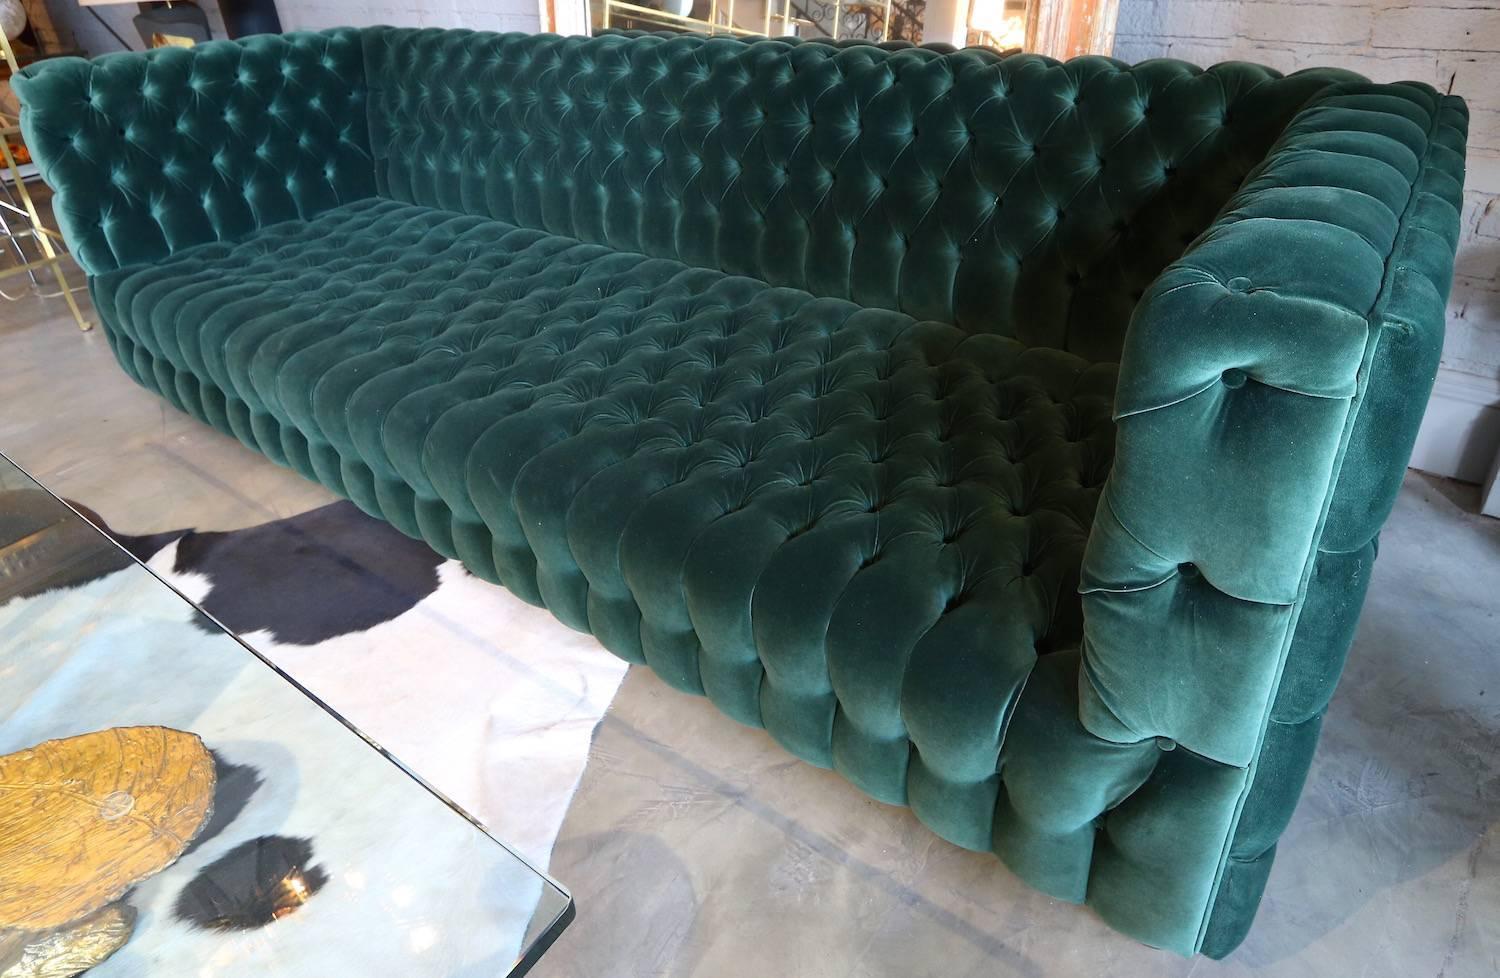 Custom Capitone "Carmen" Tufted Green Velvet Sofa For Sale at 1stdibs